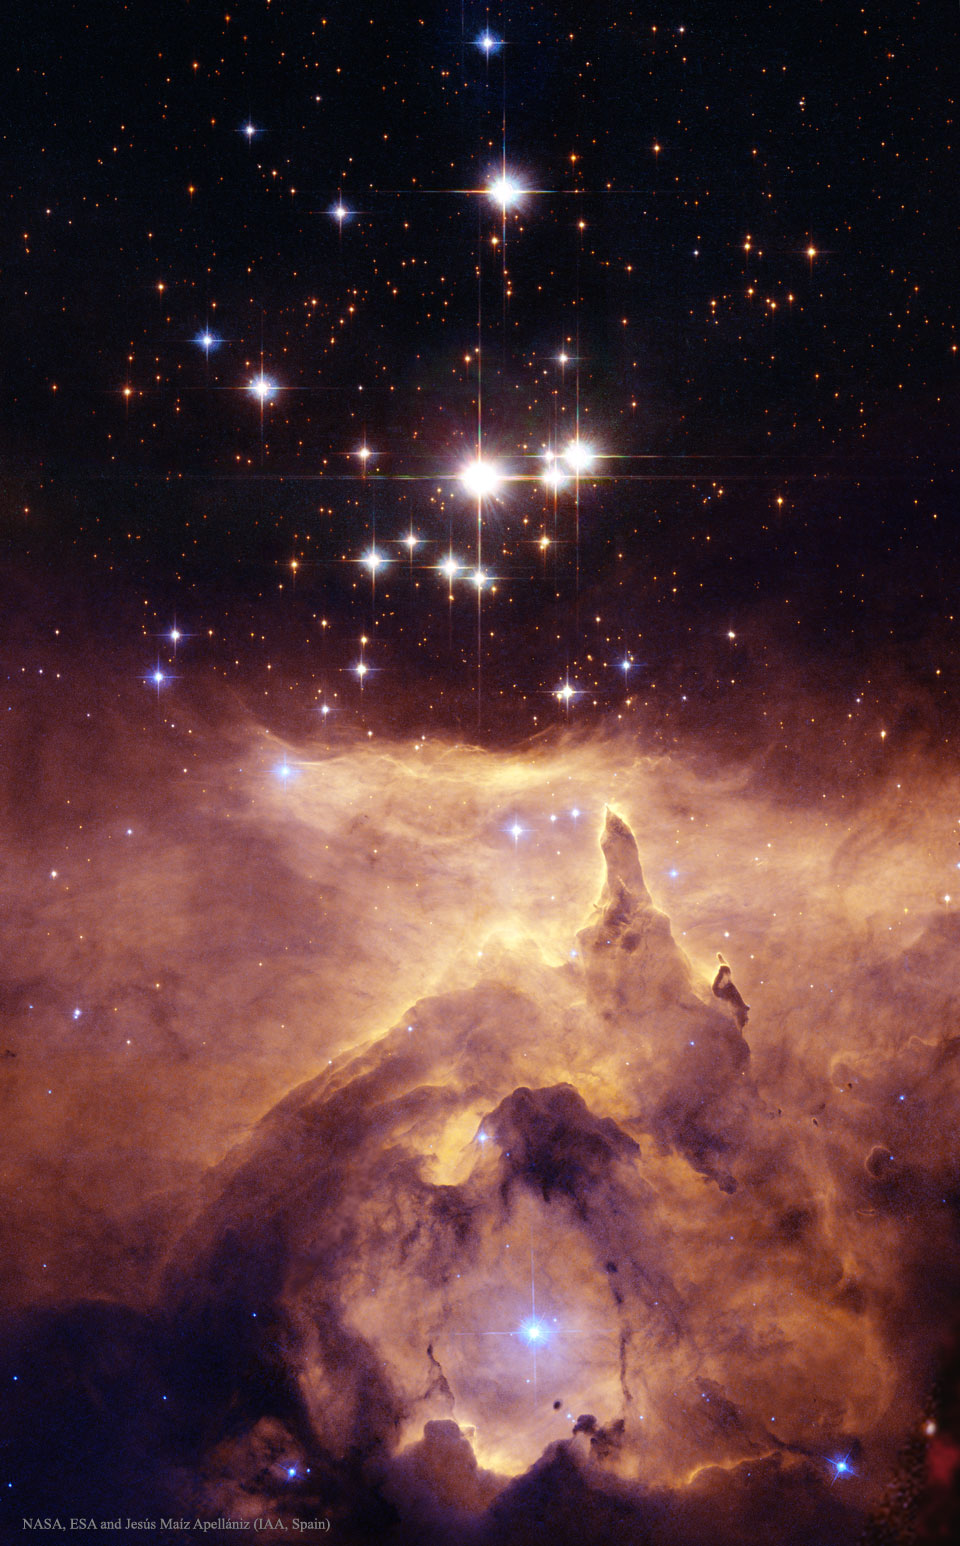 [Image: NGC6357_hubble_960.jpg]